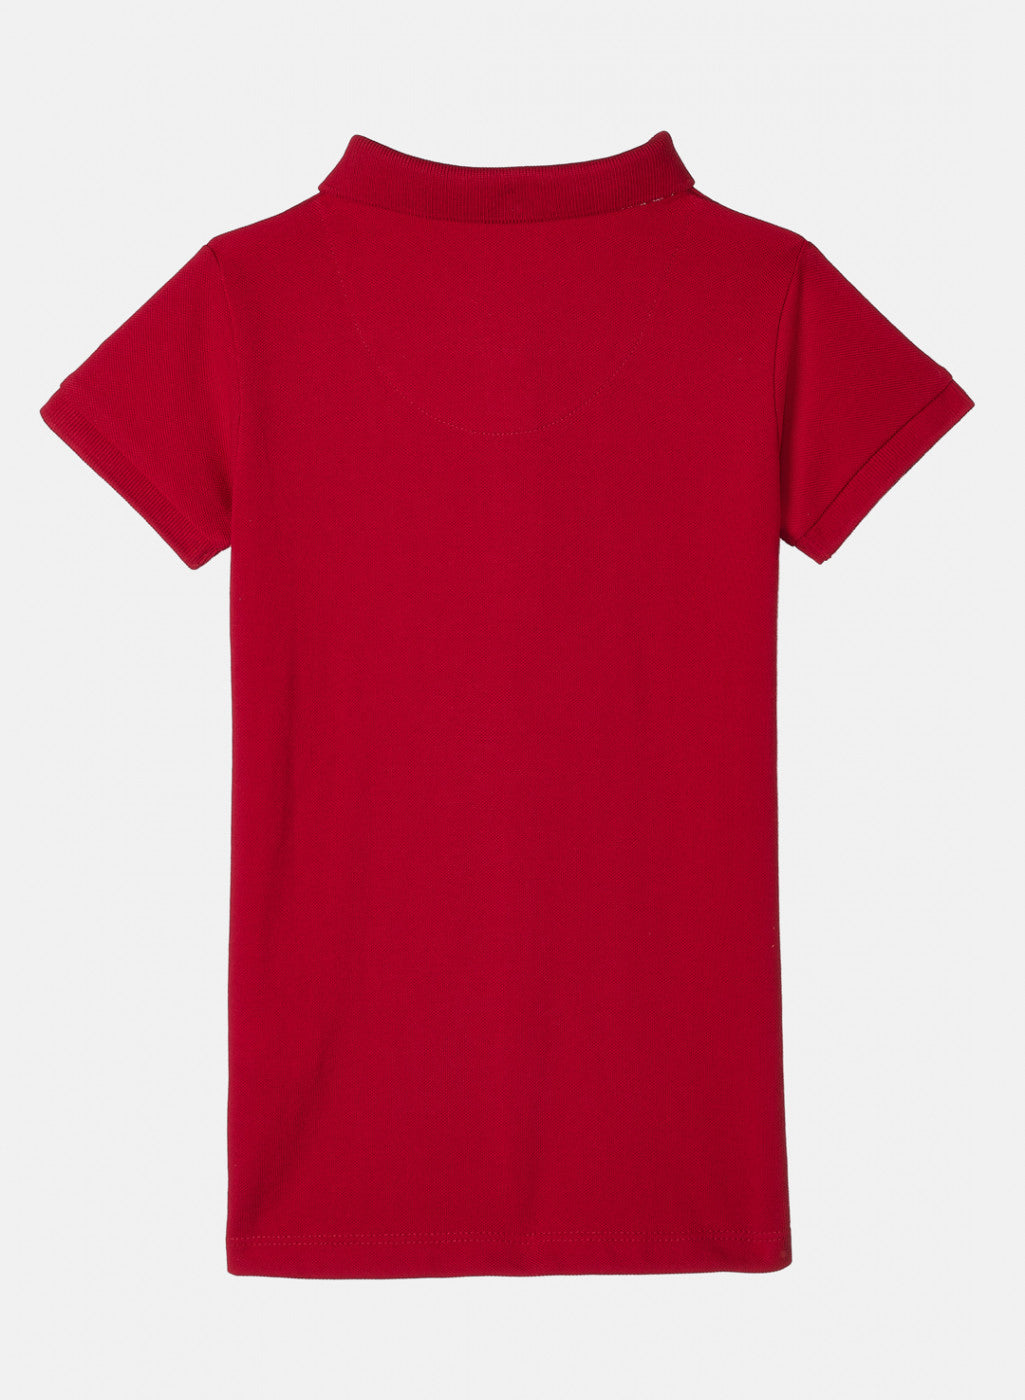 Girls Red Plain T-Shirt